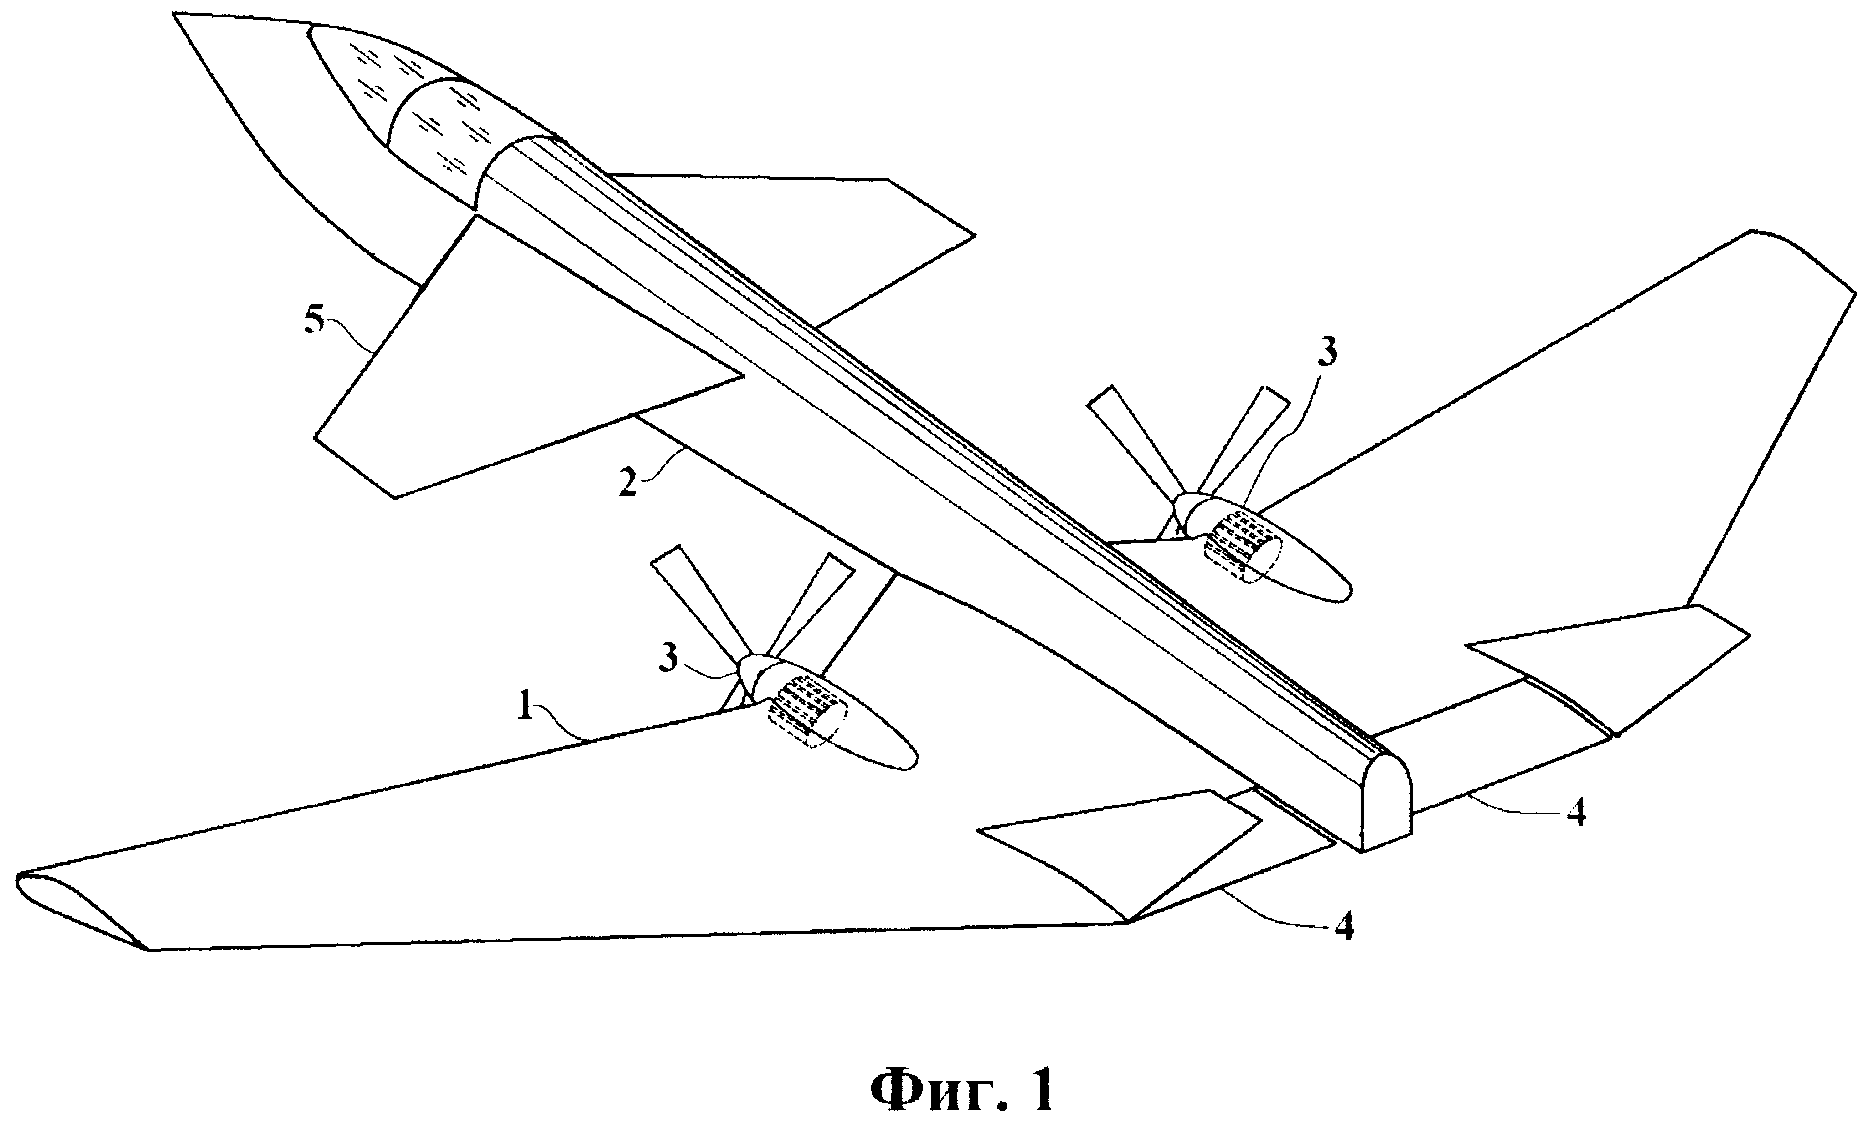 Кордовая пилотажная модель самолета